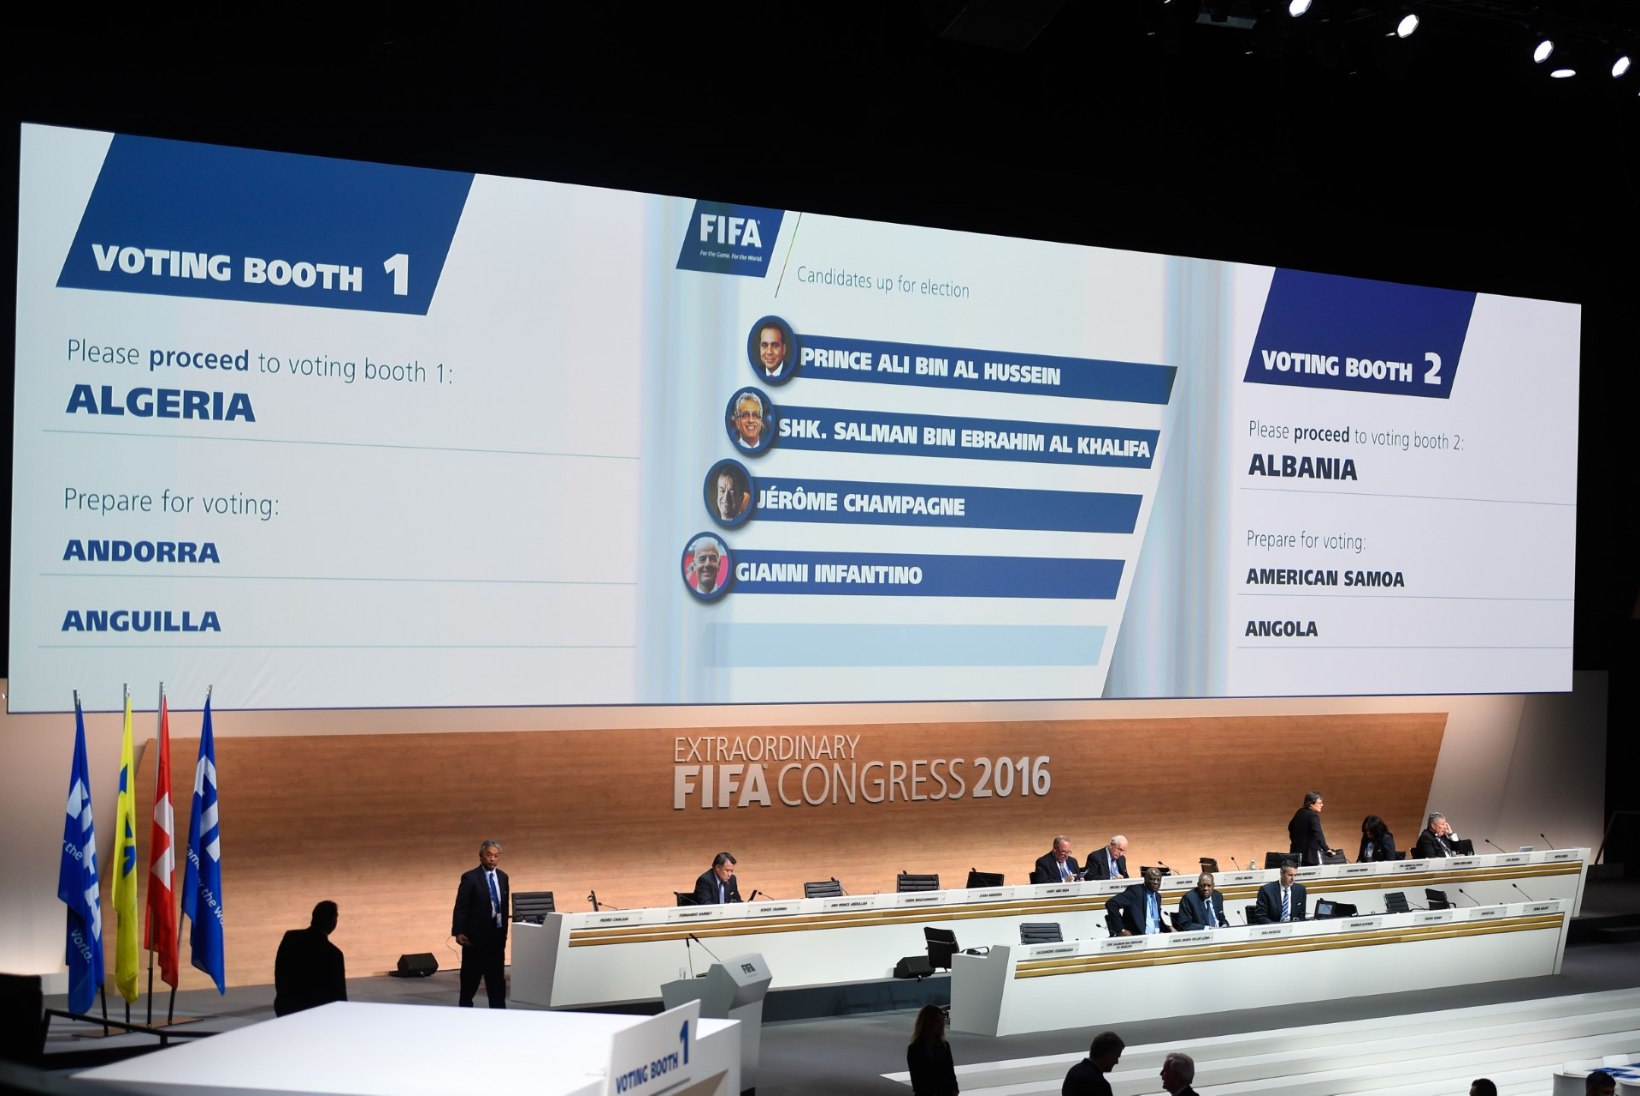 FIFA viis läbi mitu olulist muudatust enne uue presidendi valimist